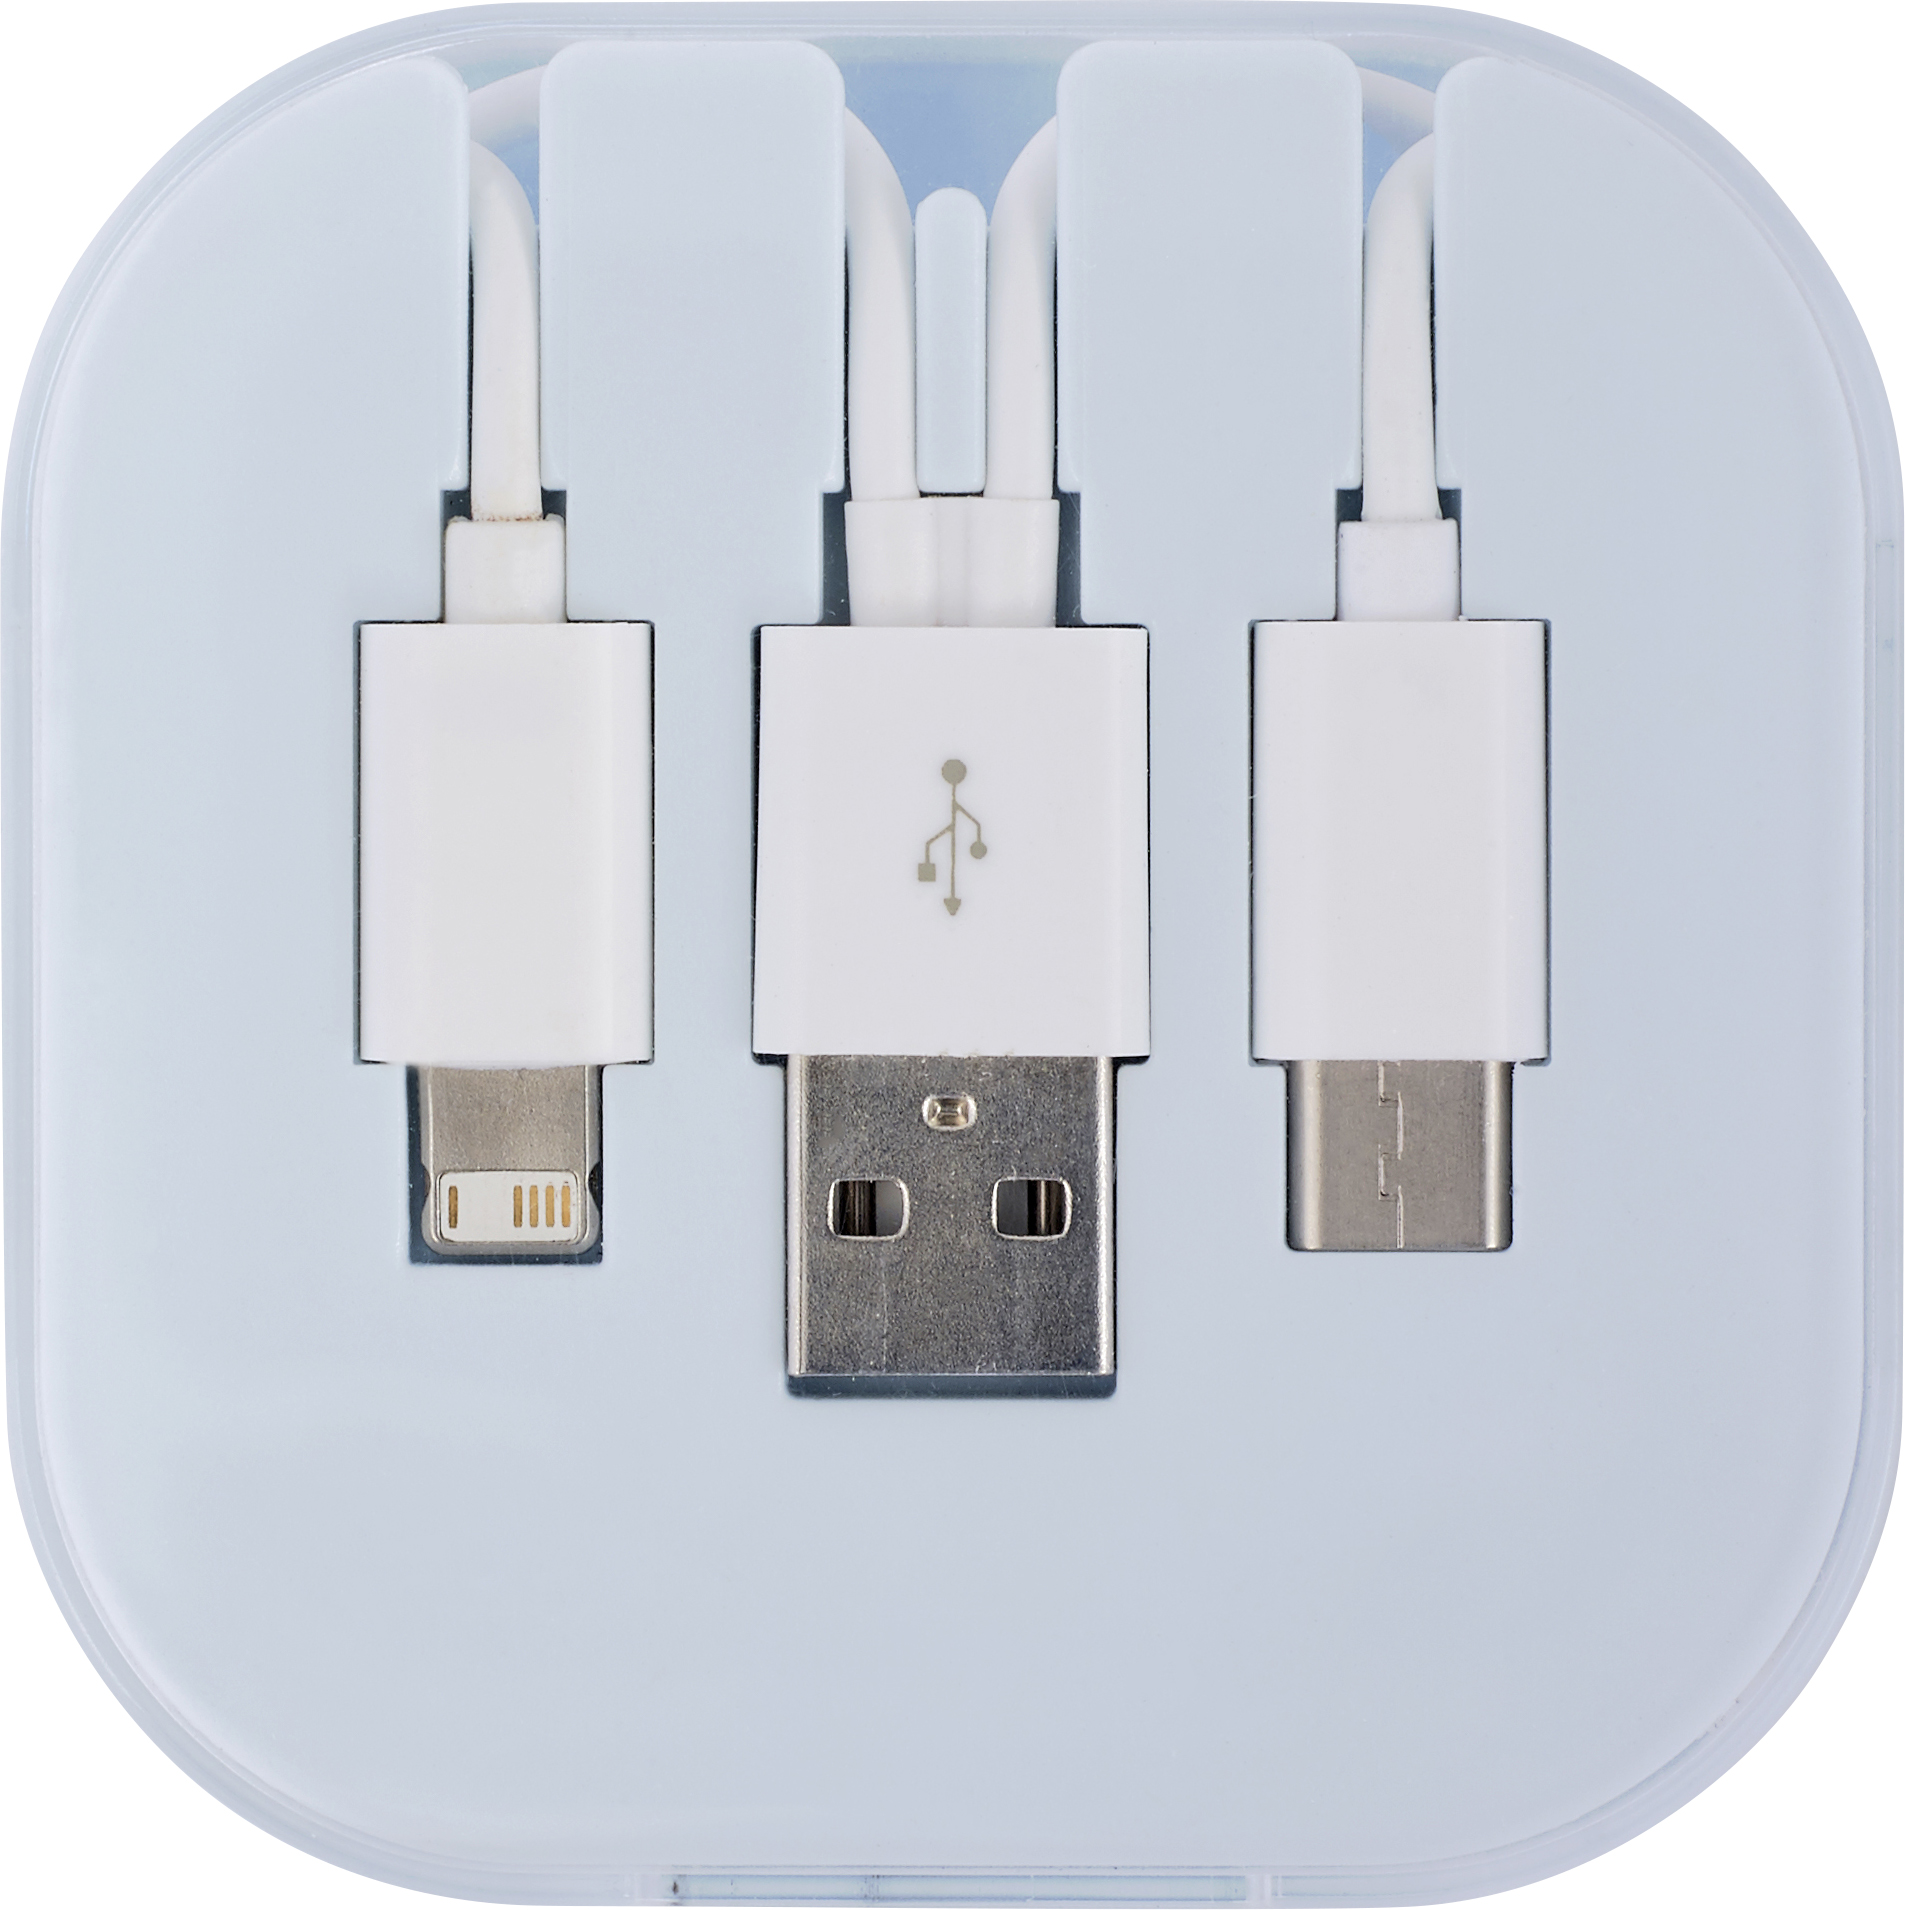 008290 002999999 2d090 frt pro01 fal - USB charging cable set